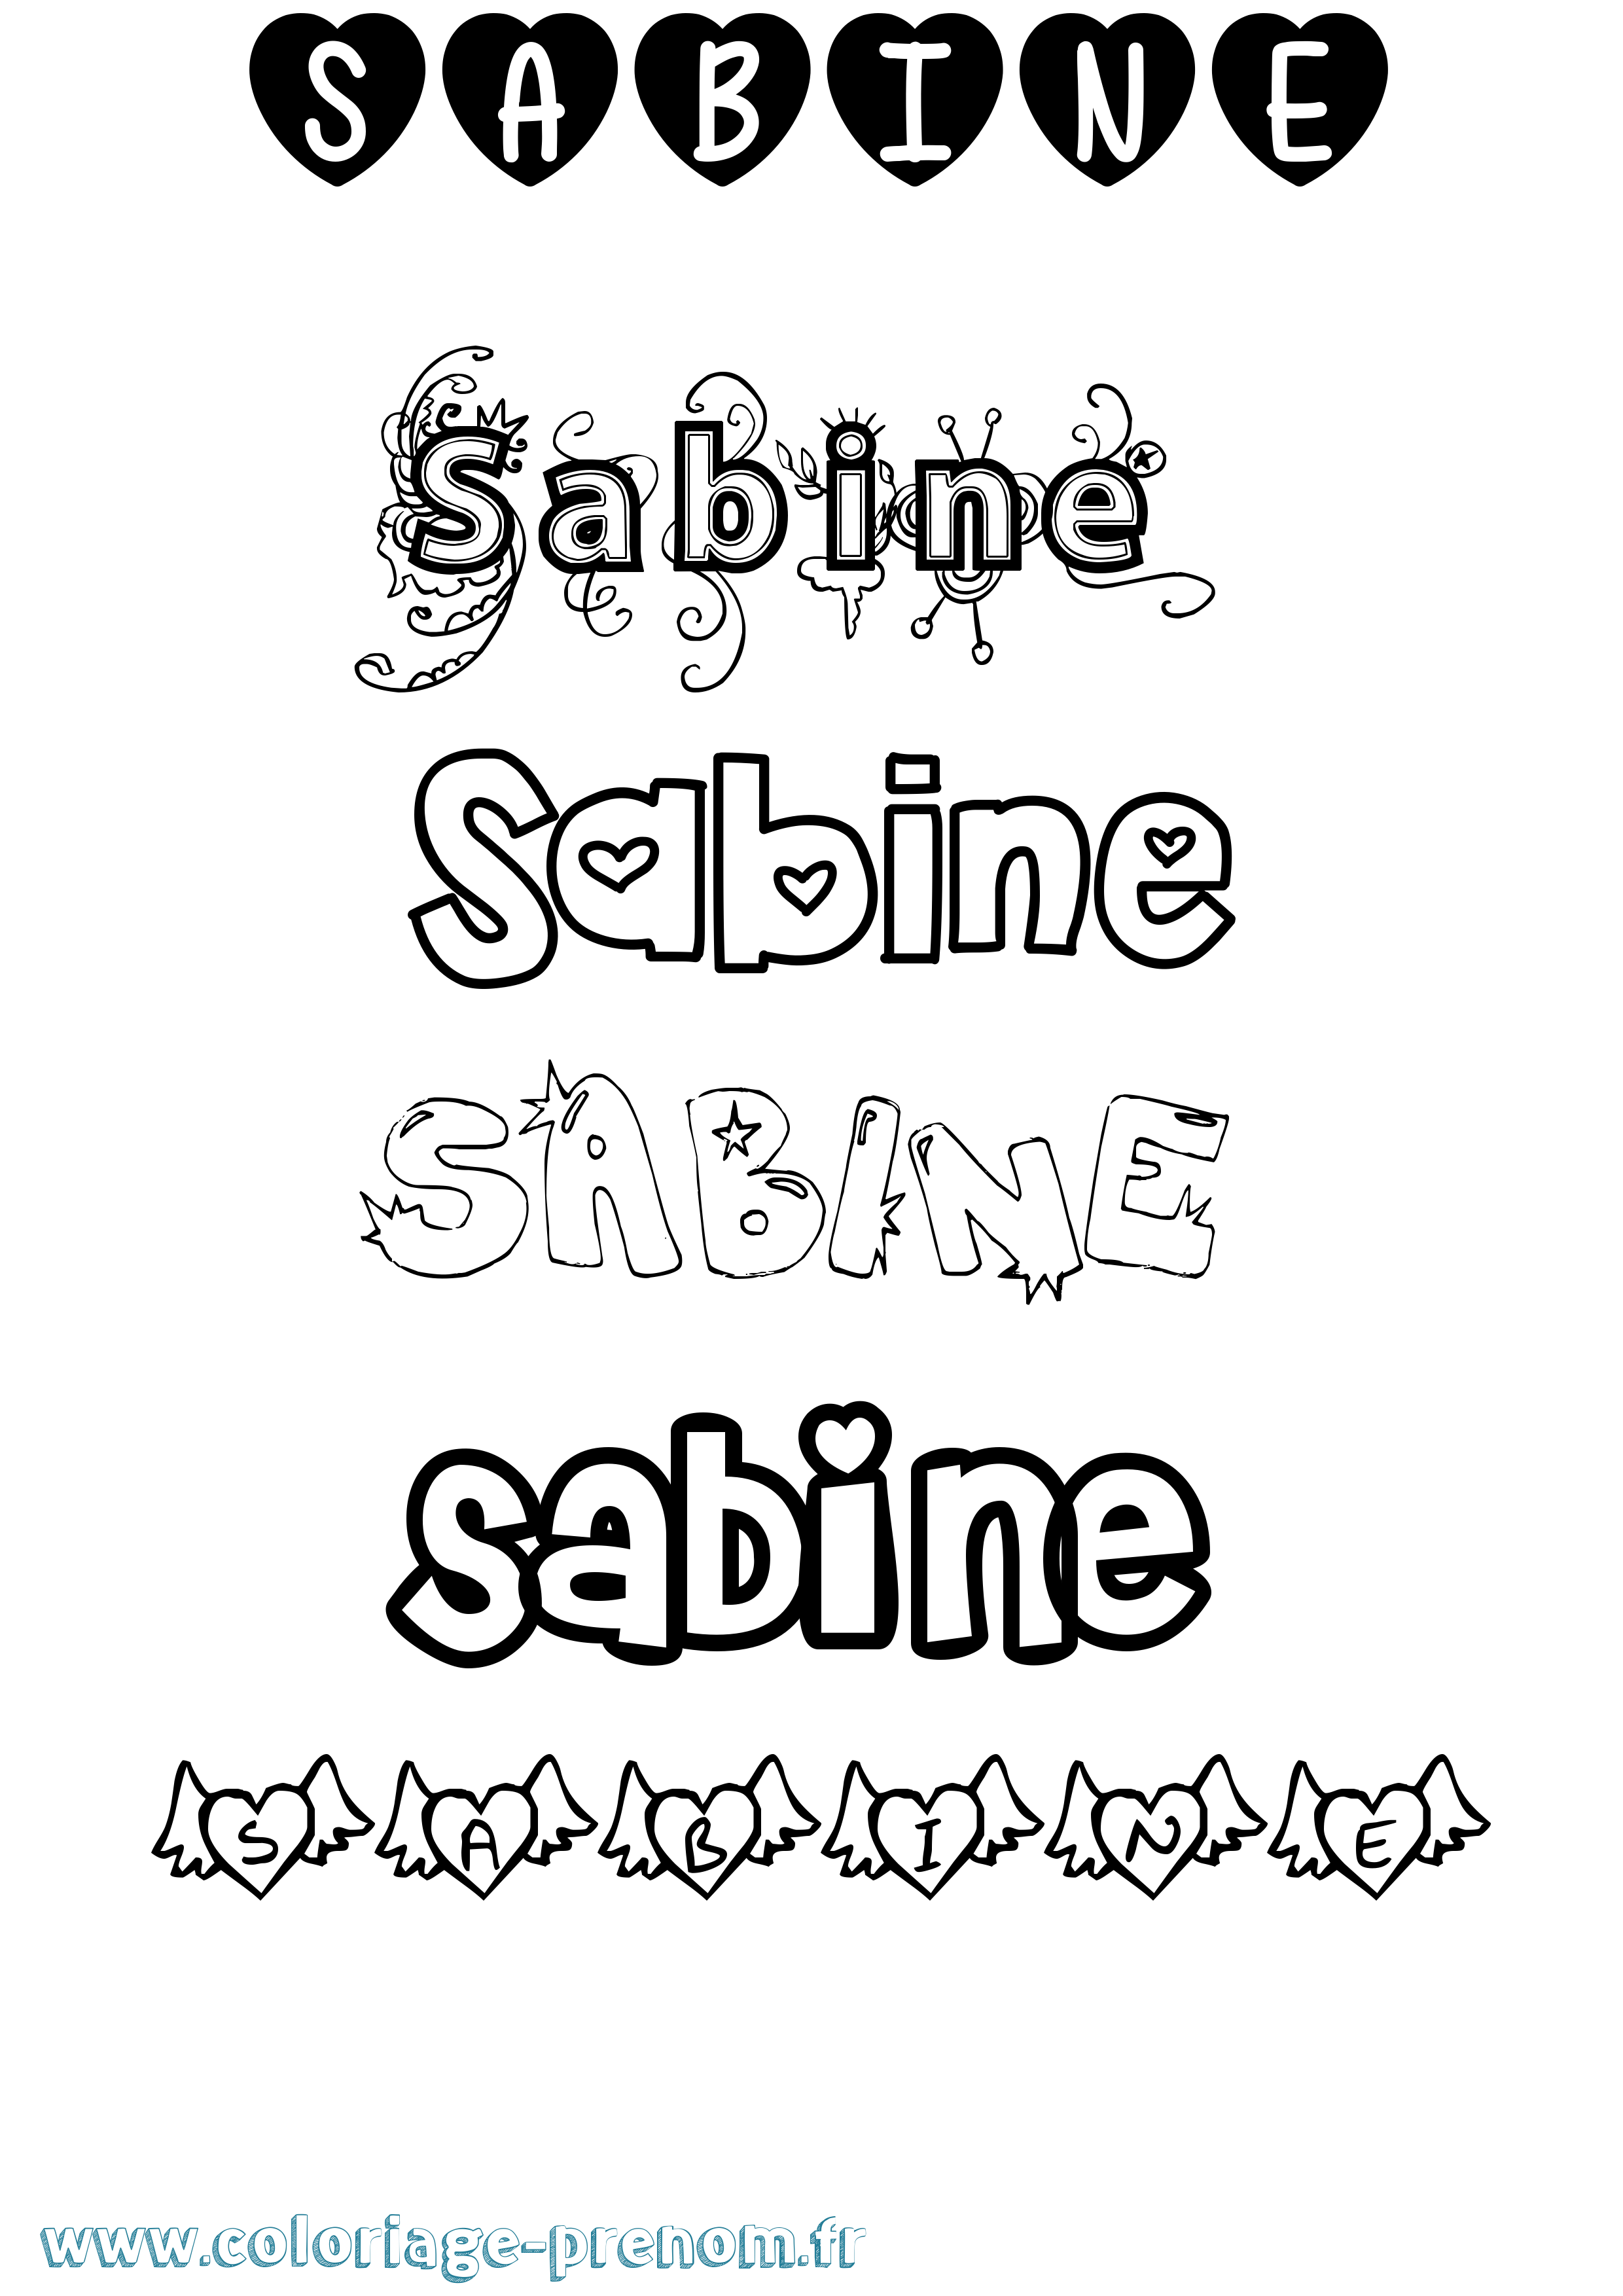 Coloriage prénom Sabine